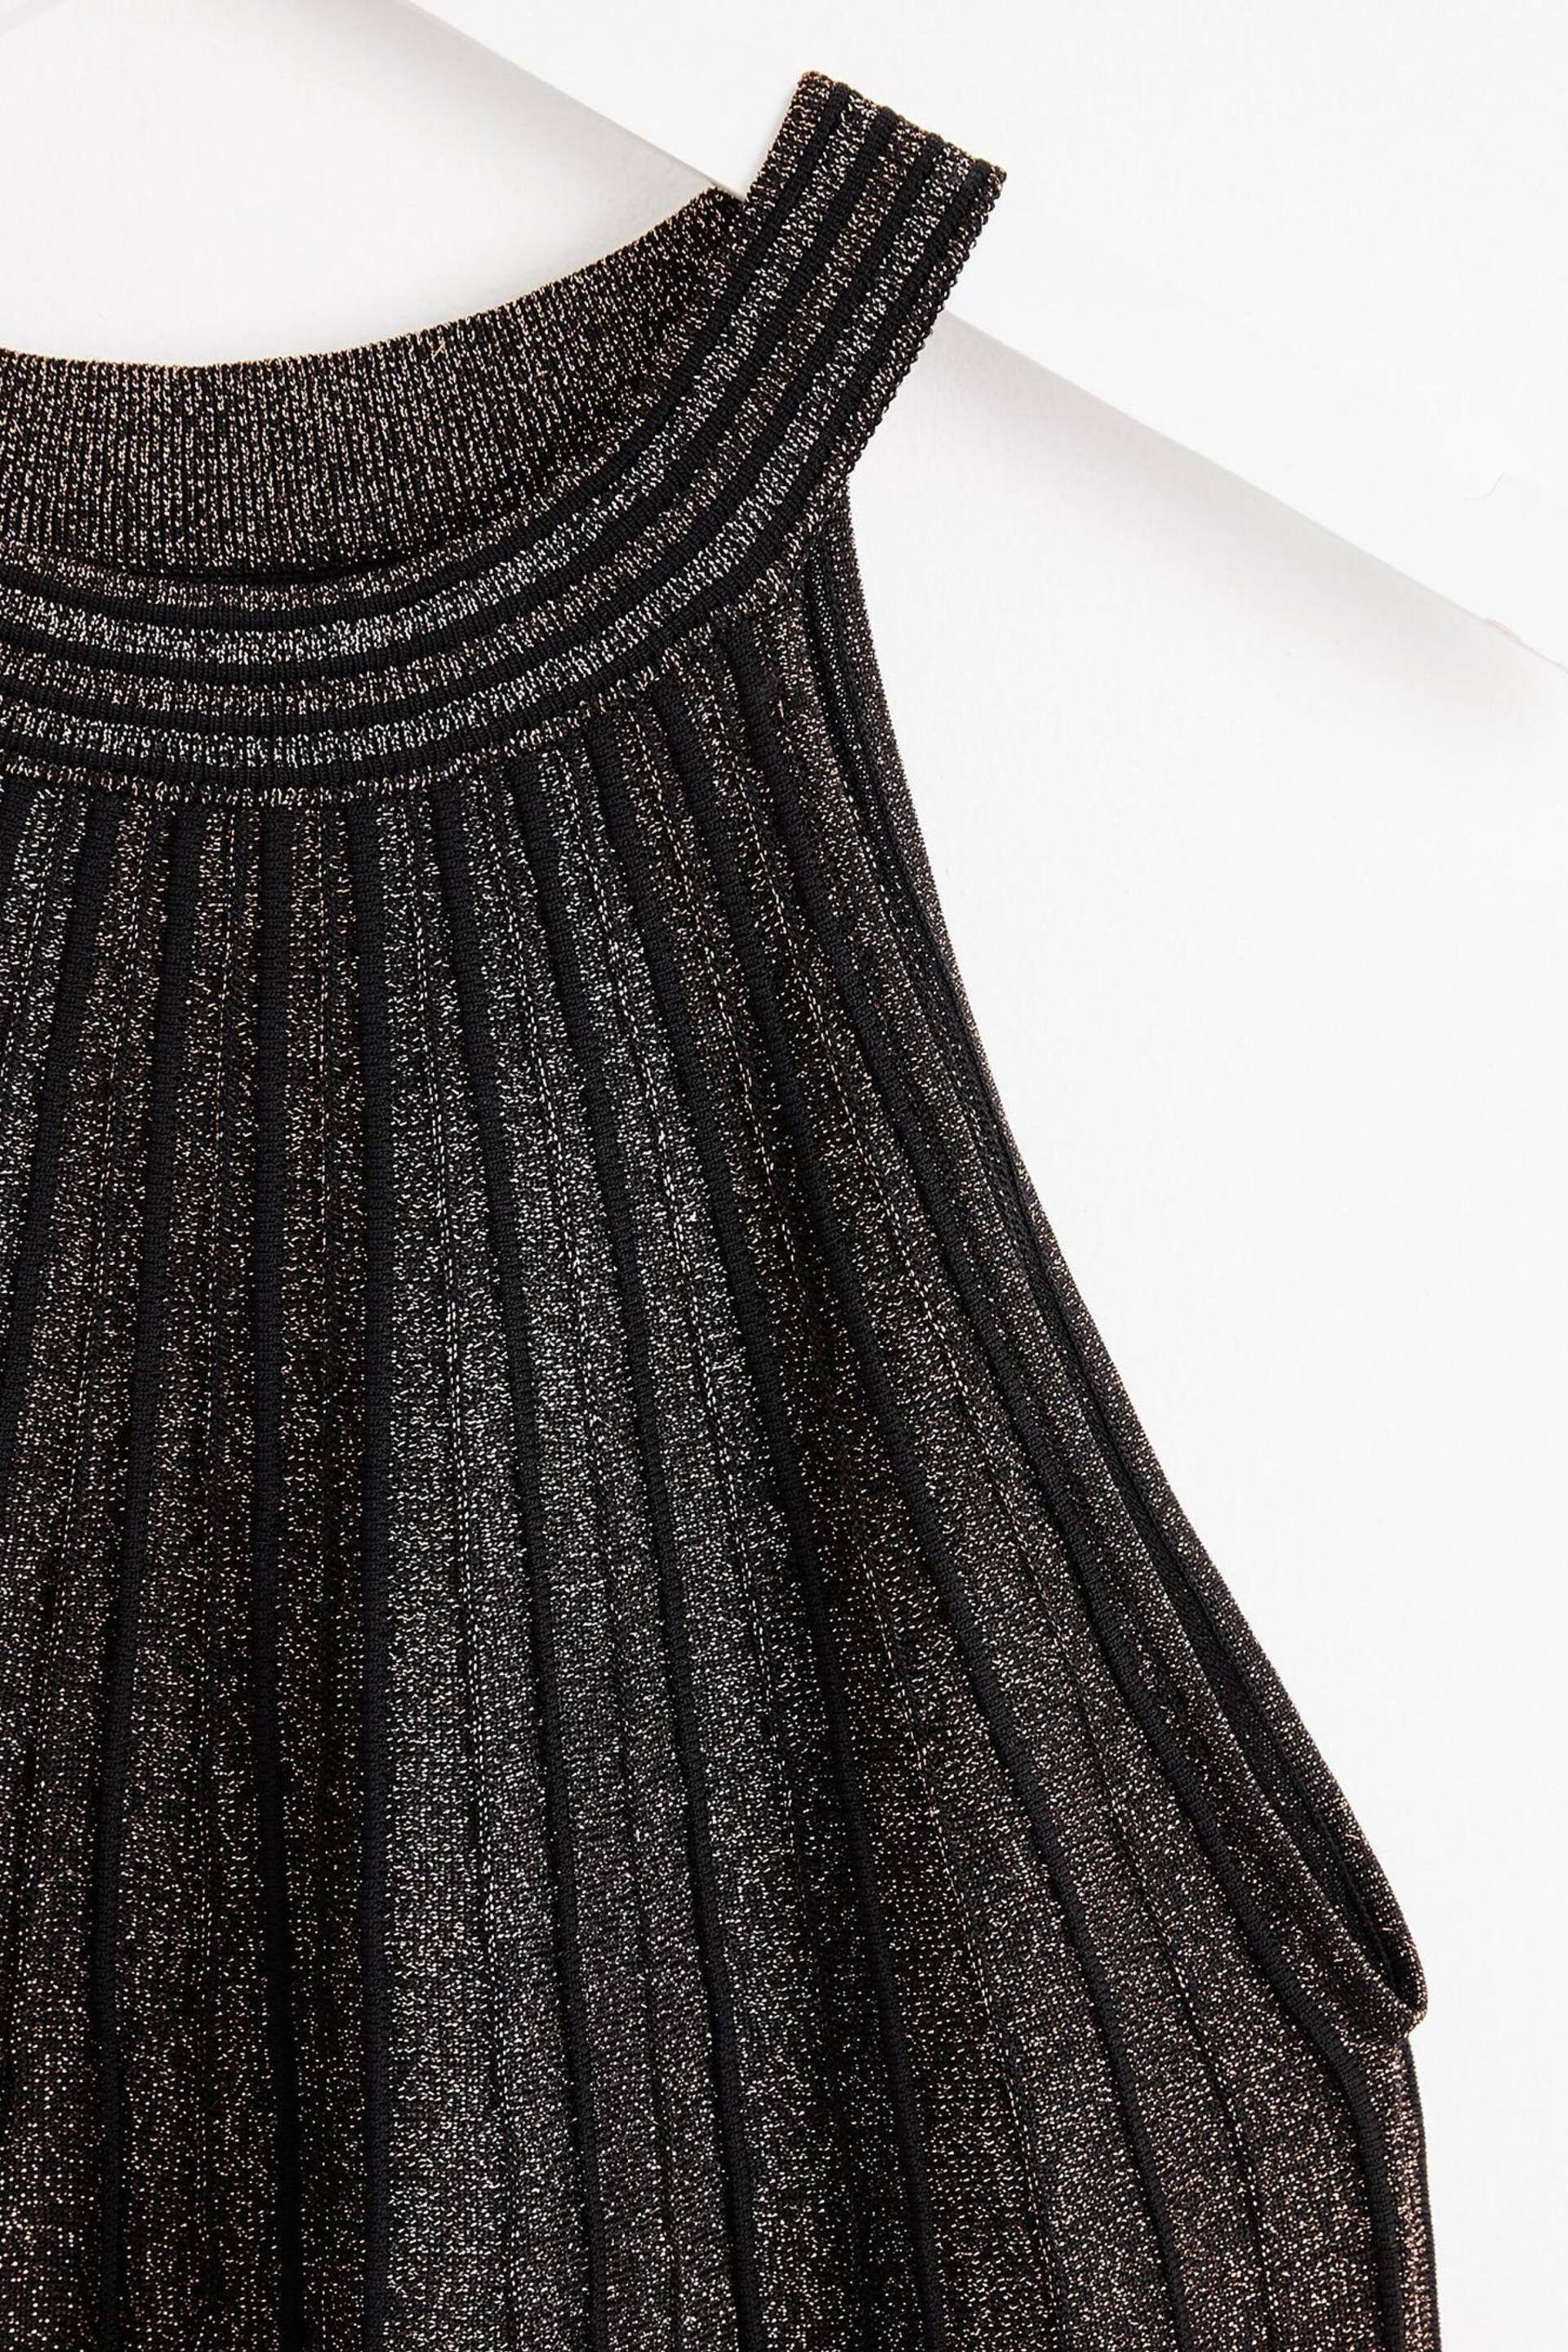 Oliver Bonas Black Sparkle Stripe Copper Halter Neck Shift Dress - Image 7 of 8